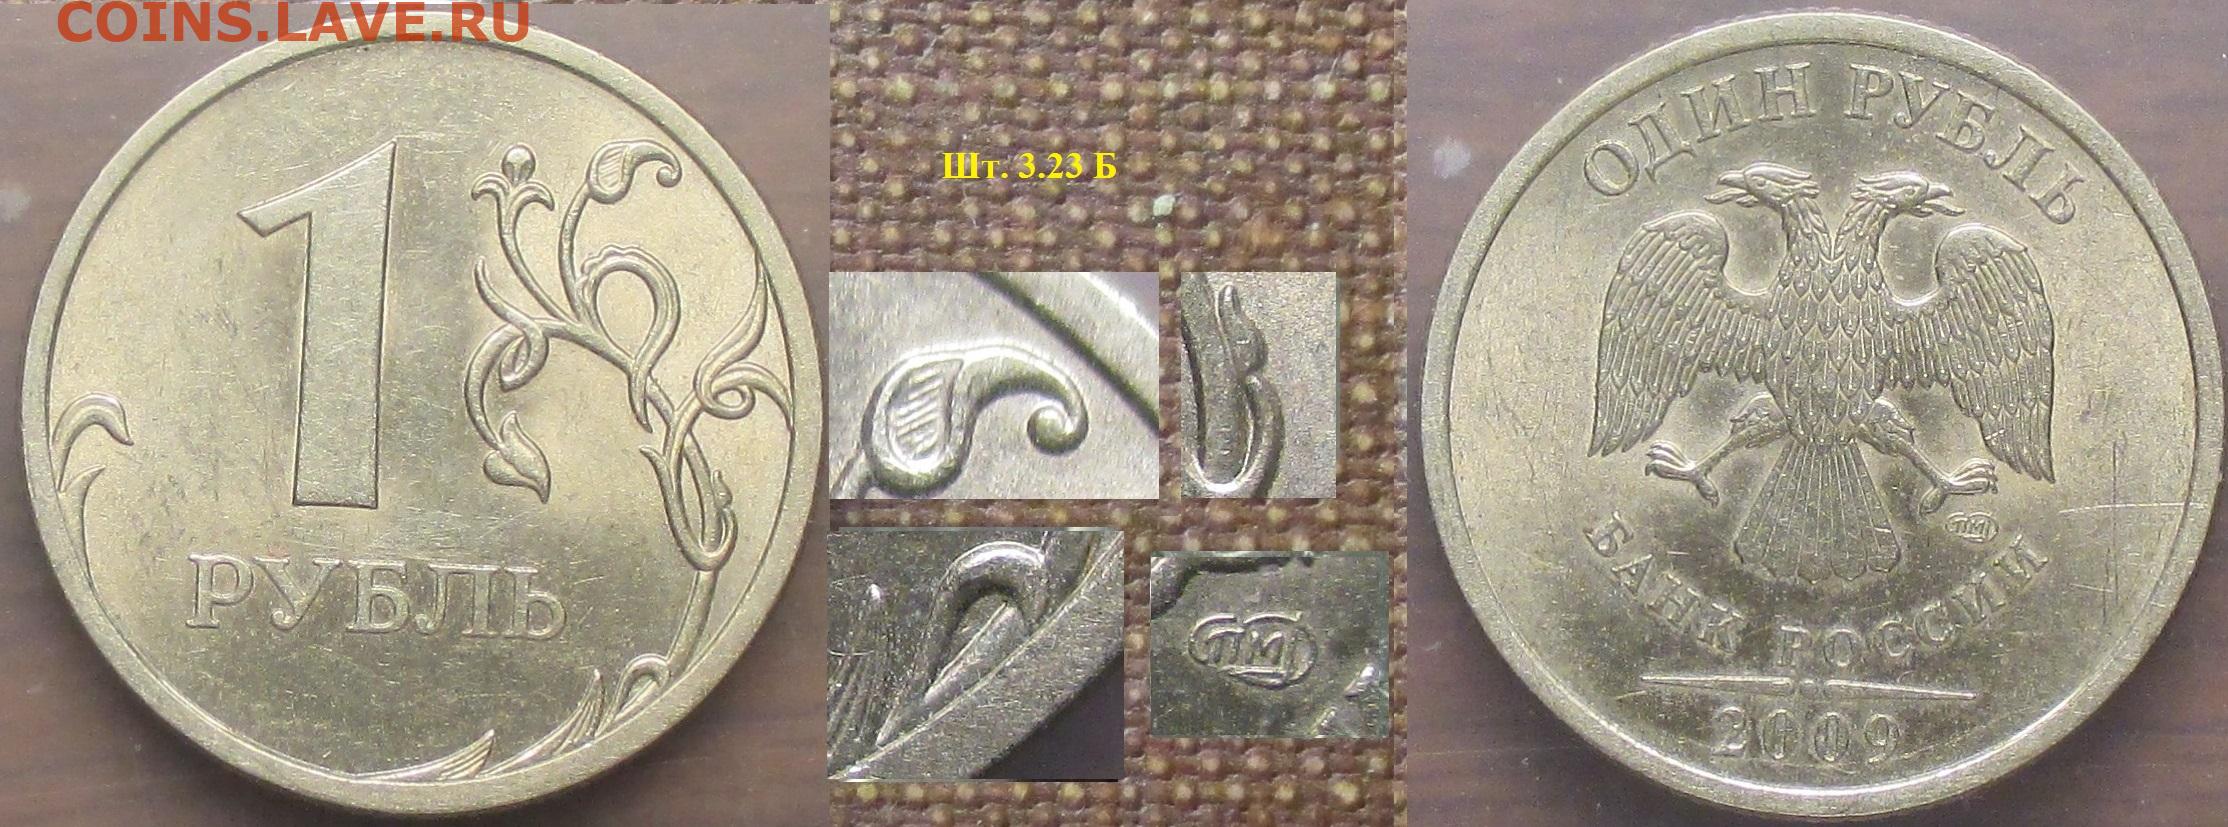 Никелевые монеты